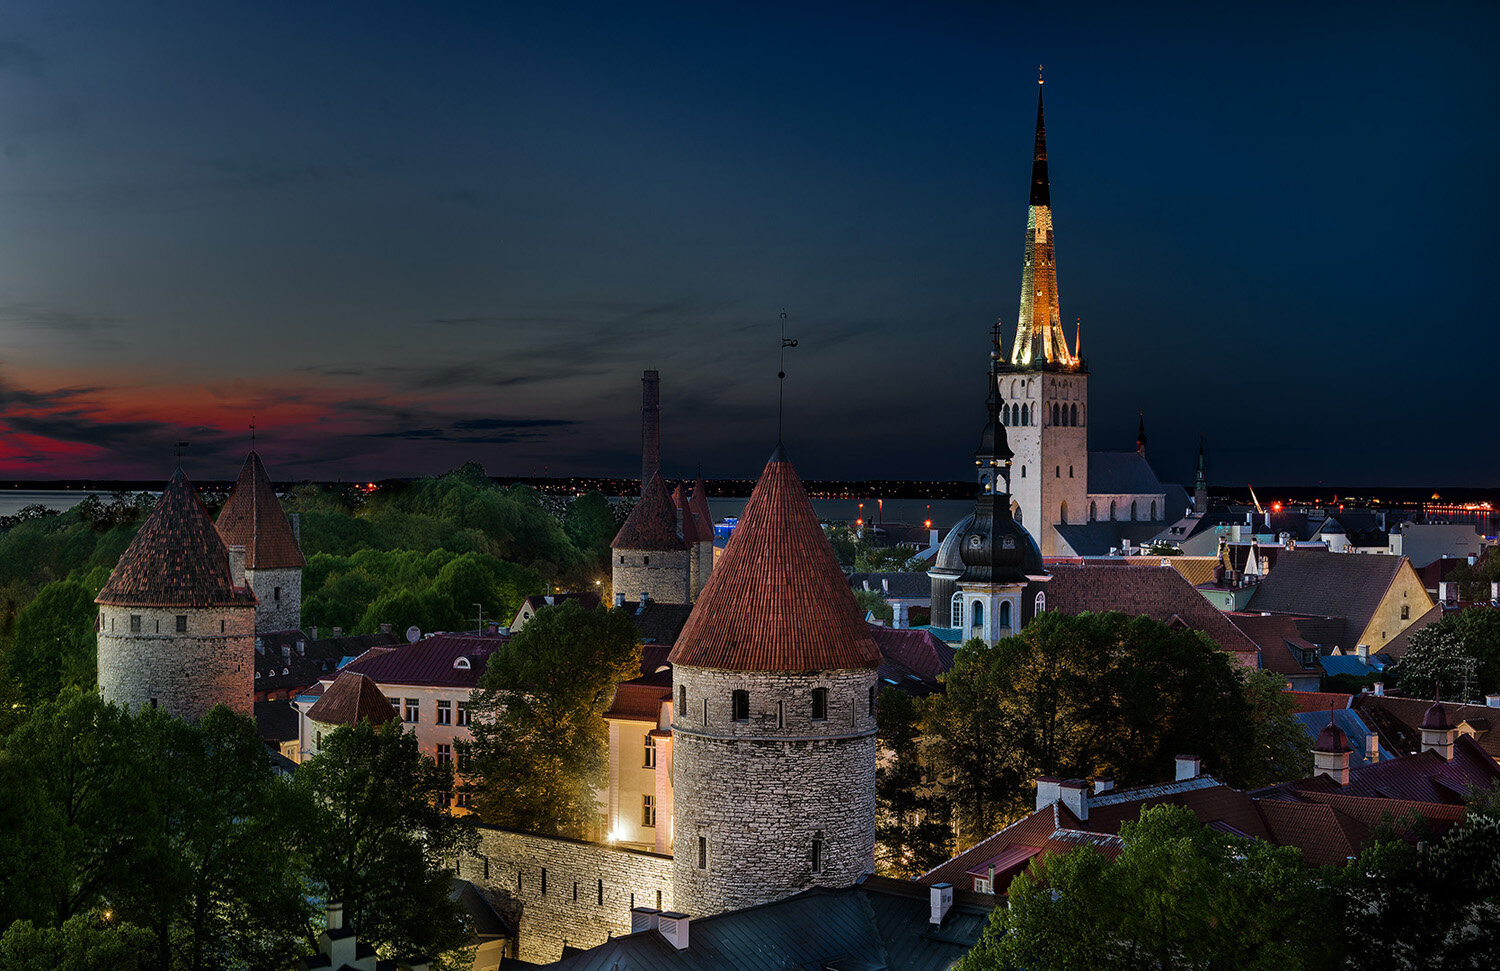 Old Town at Night, Tallinn, Estonia